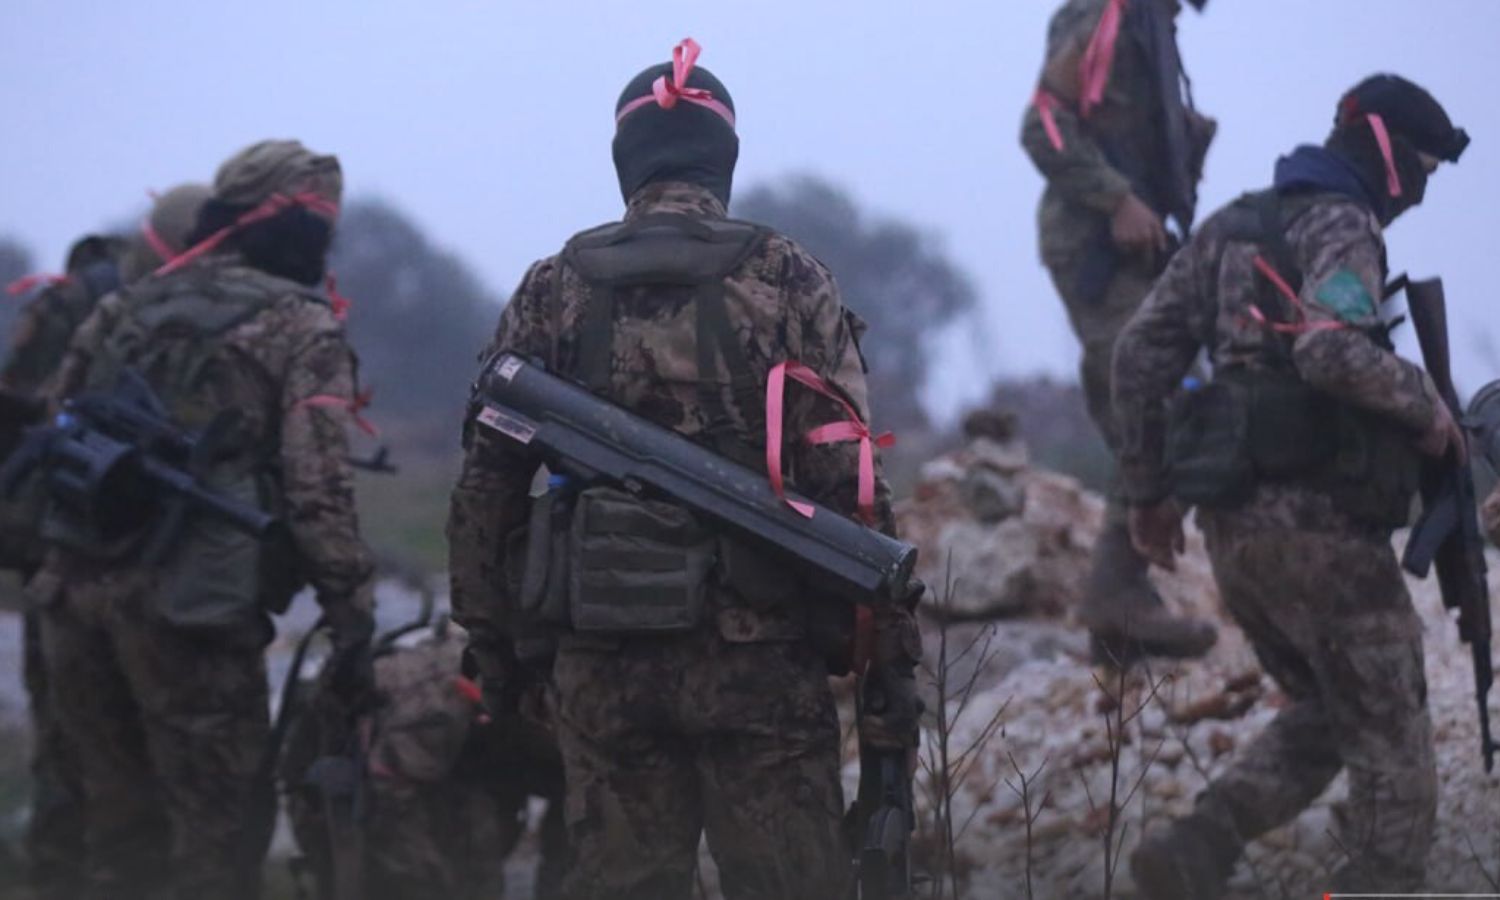 استعداد وانطلاق مقاتلي لواء "عمر بن الخطاب" التابع لـ "هيئة تحرير الشام" إلى نقاط قوات النظام على محور بلدة أورم الكبرى بريف حلب الغربي- 19 كانون الثاني 2023 (أمجاد) 